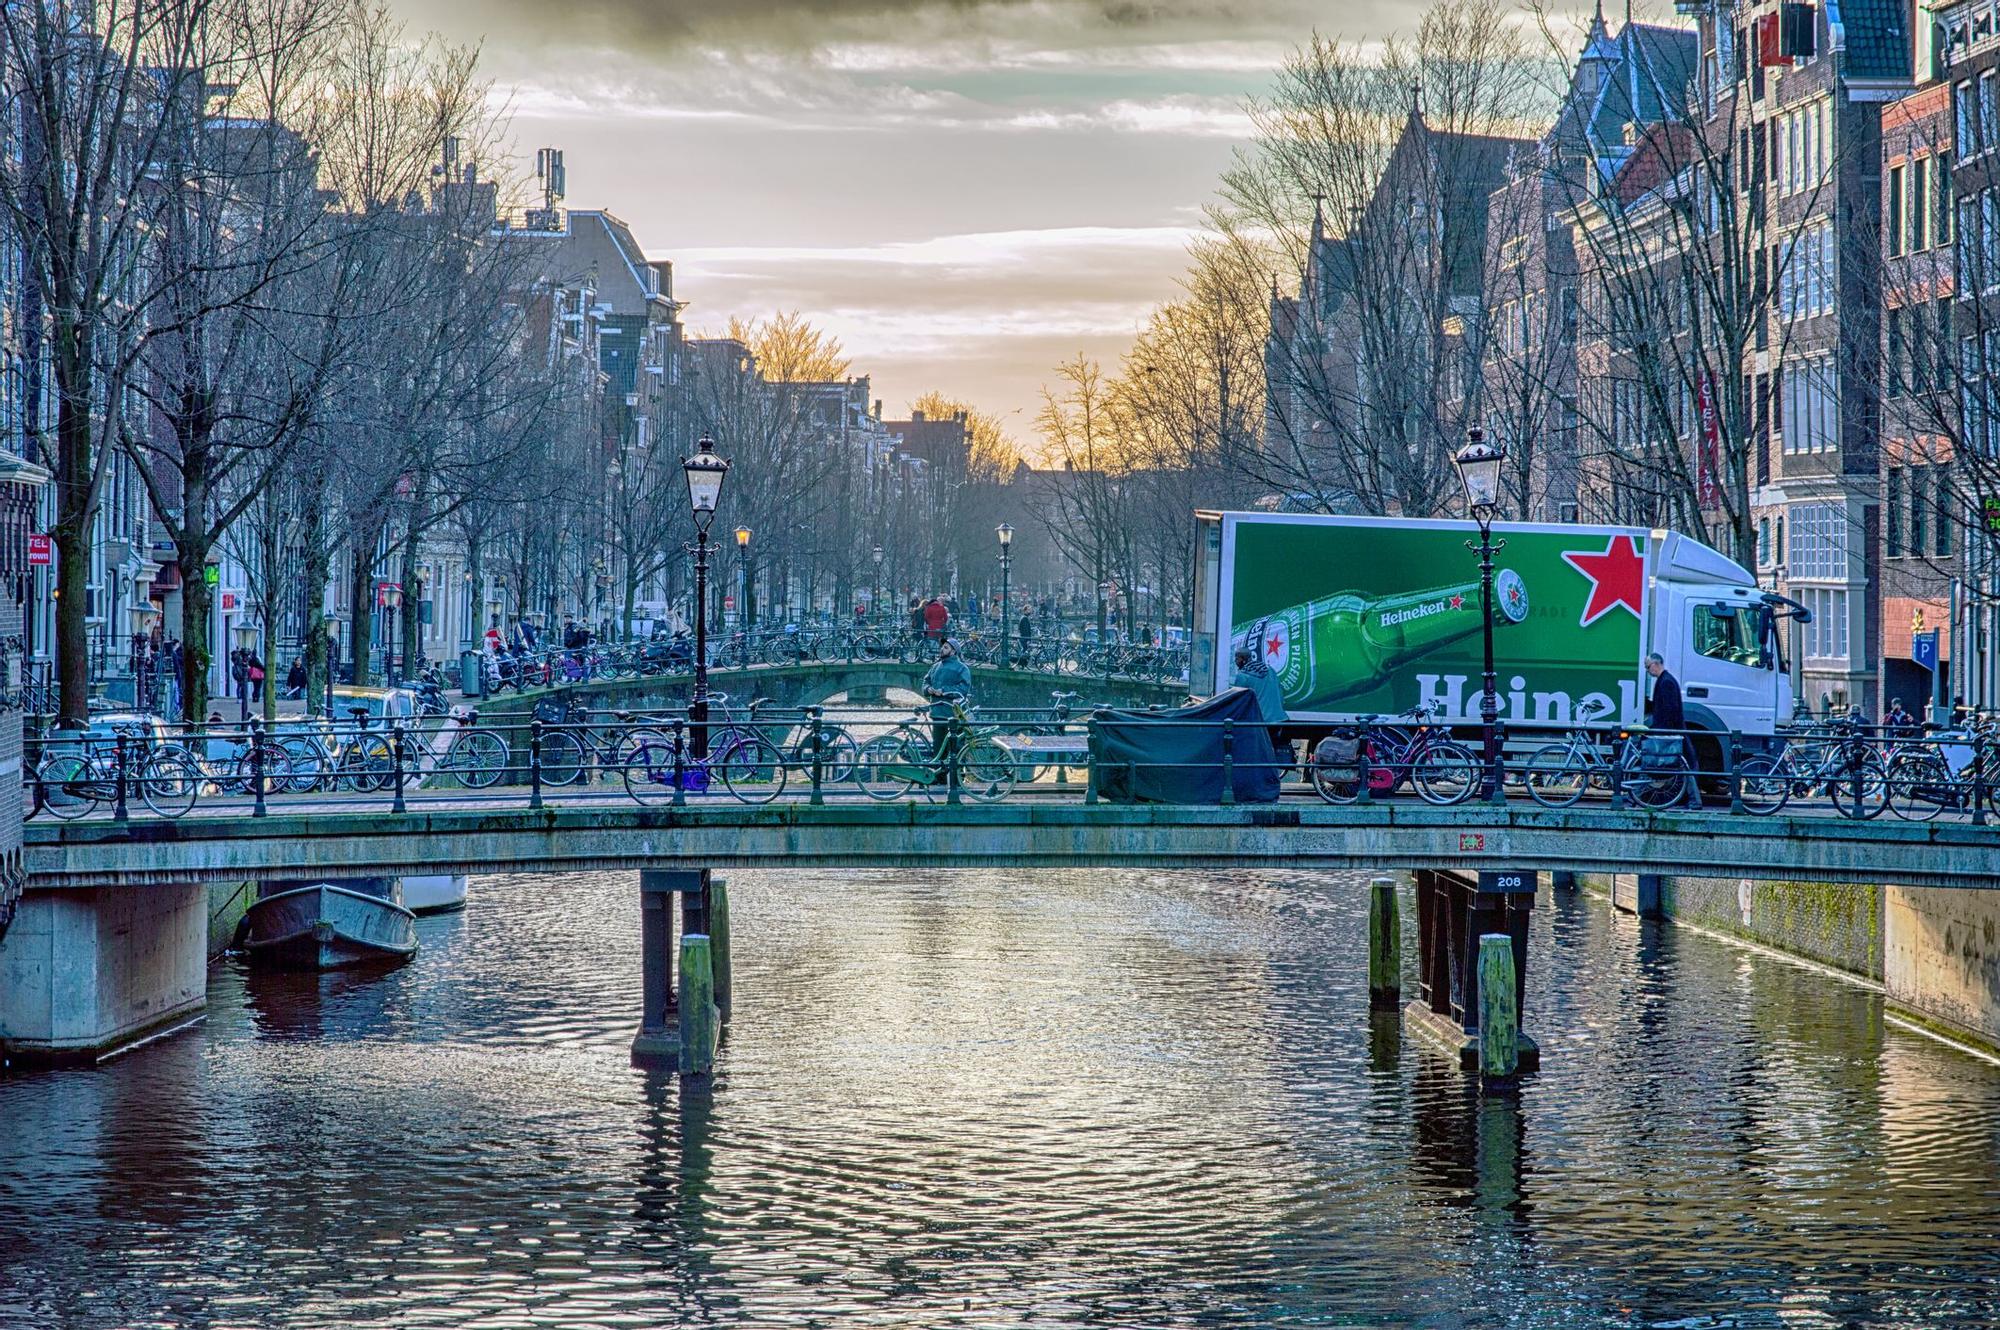 Amsterdam paisaje con camión Heineken